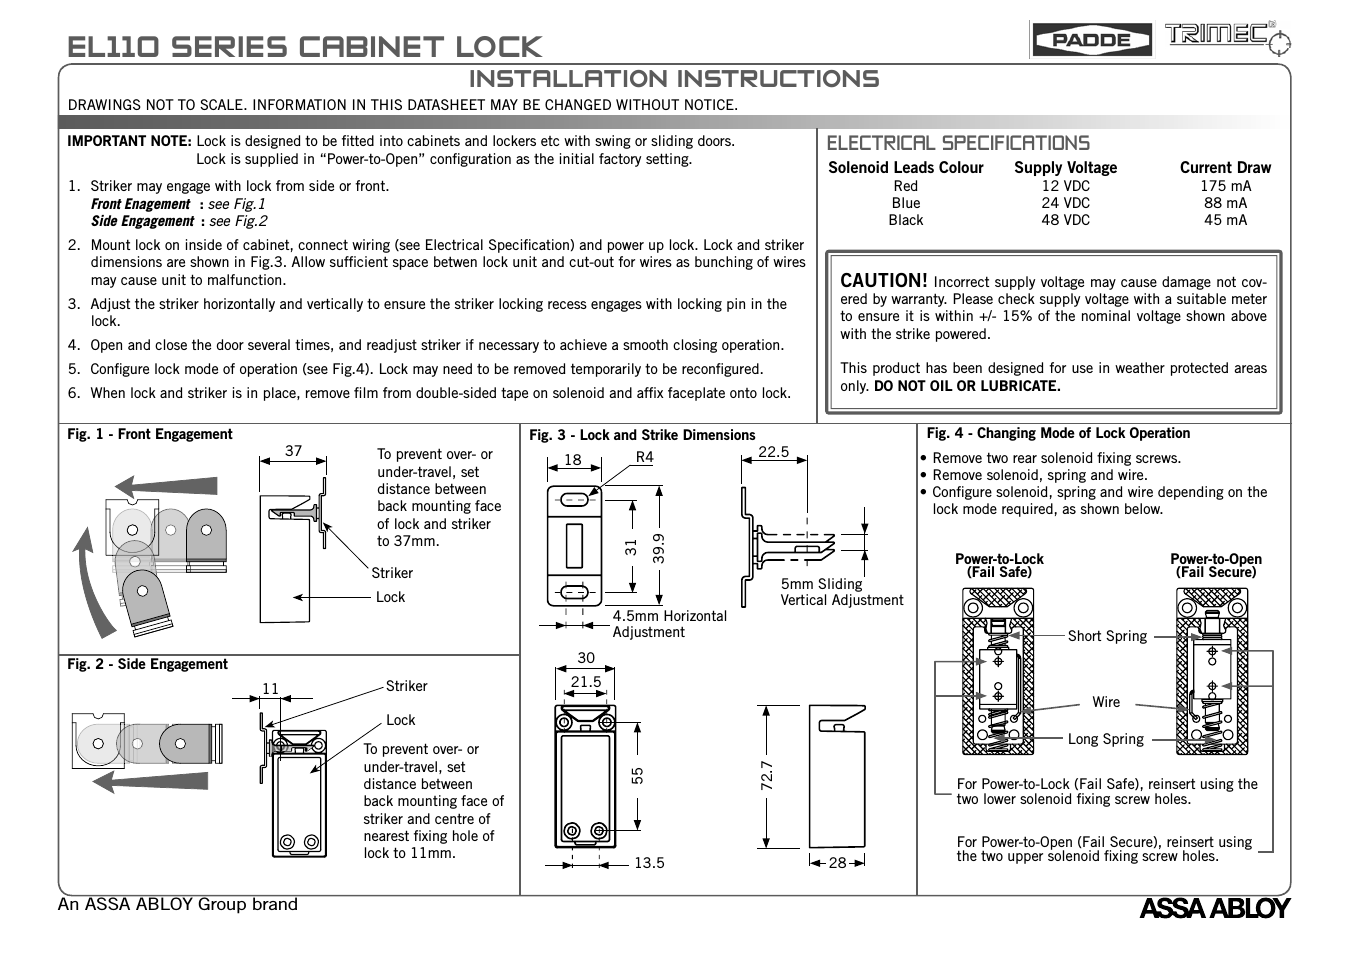 EL110 Electric Cabinet Lock